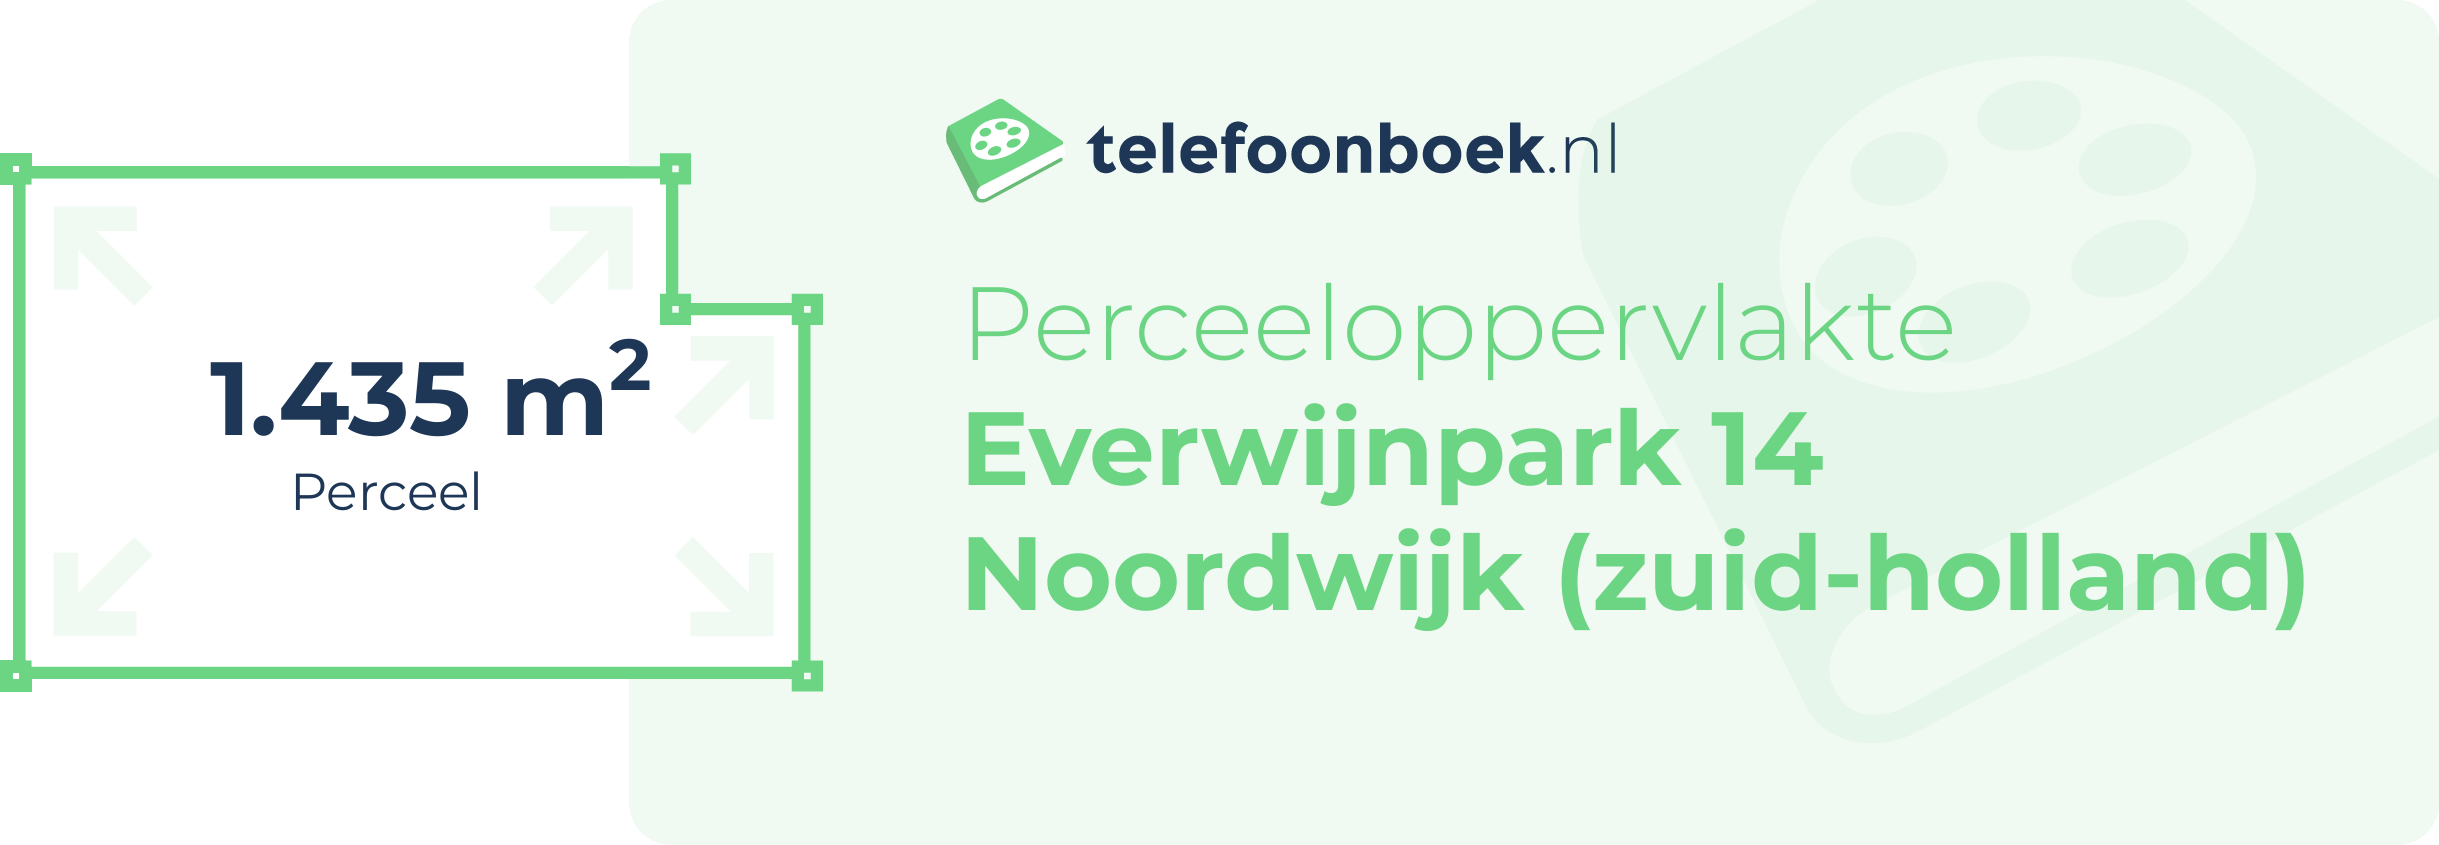 Perceeloppervlakte Everwijnpark 14 Noordwijk (Zuid-Holland)